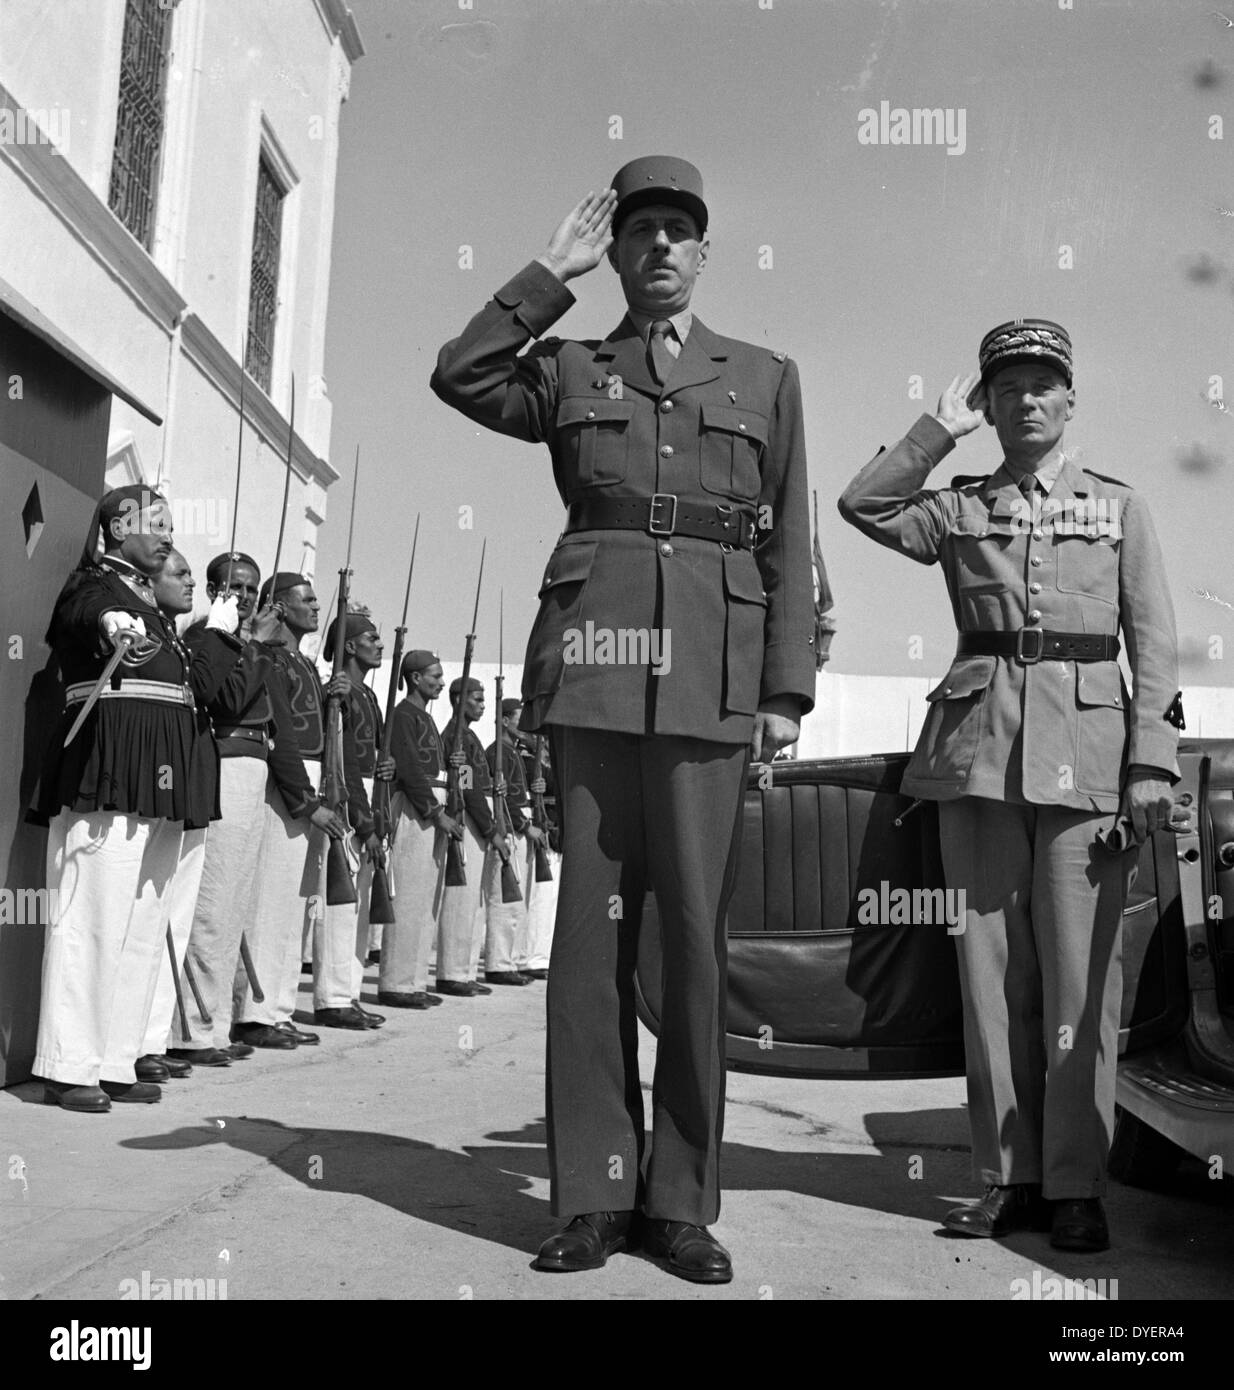 Carthage, Tunisie. Le général de Gaulle, accompagné du Général Mast, saluant comme le groupe joue Marseillaise à l'extérieur du palais d'été du bey de Tunis, en Tunisie en 19430101, en faisant la seconde guerre mondiale Banque D'Images